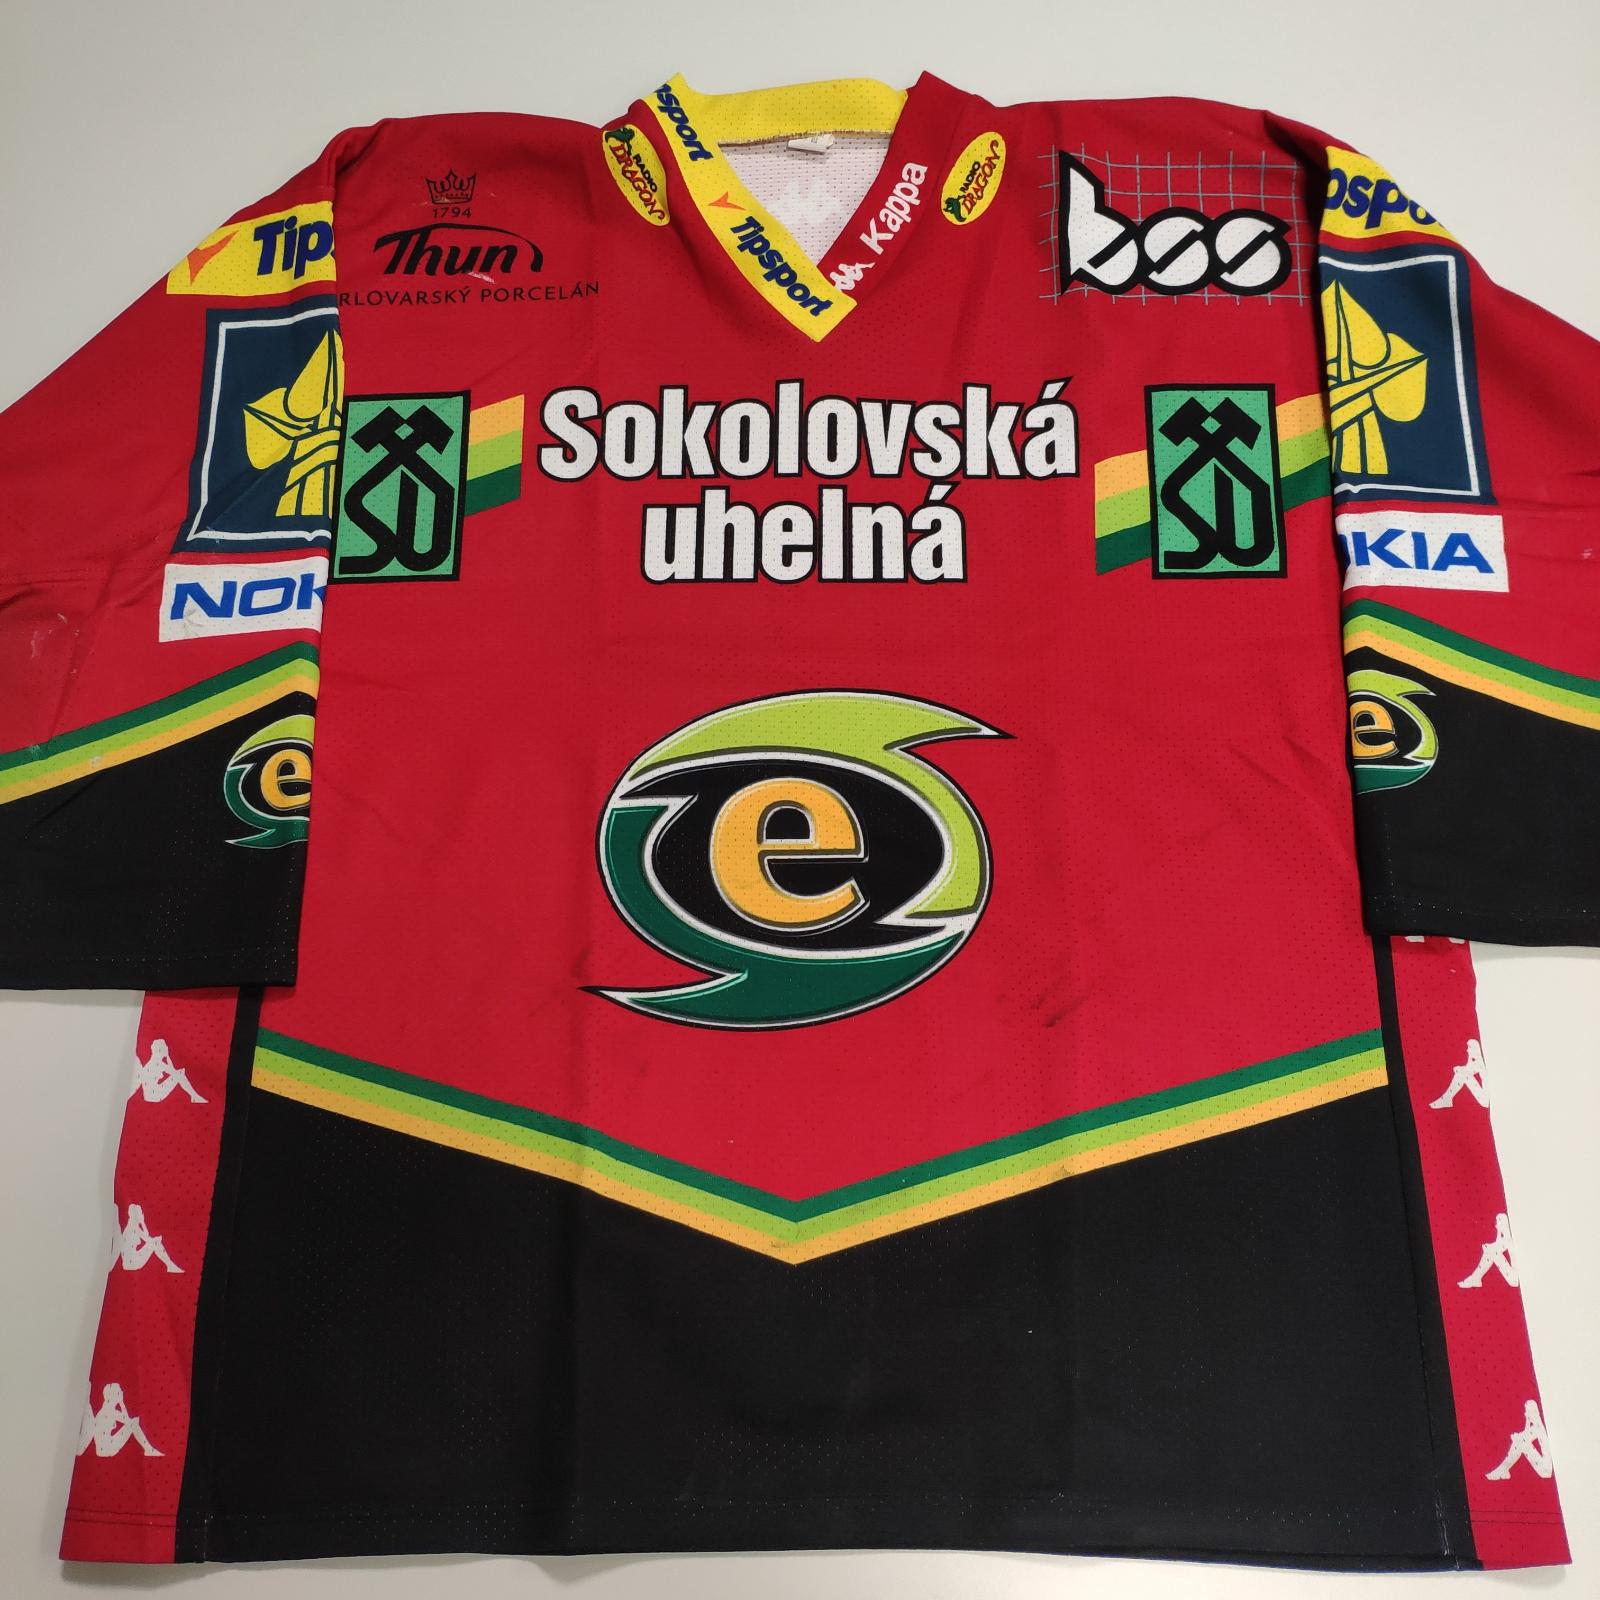 Originální hraný dres - #15 Miroslav Duben - Karlovy Vary - Vybavení na hokej